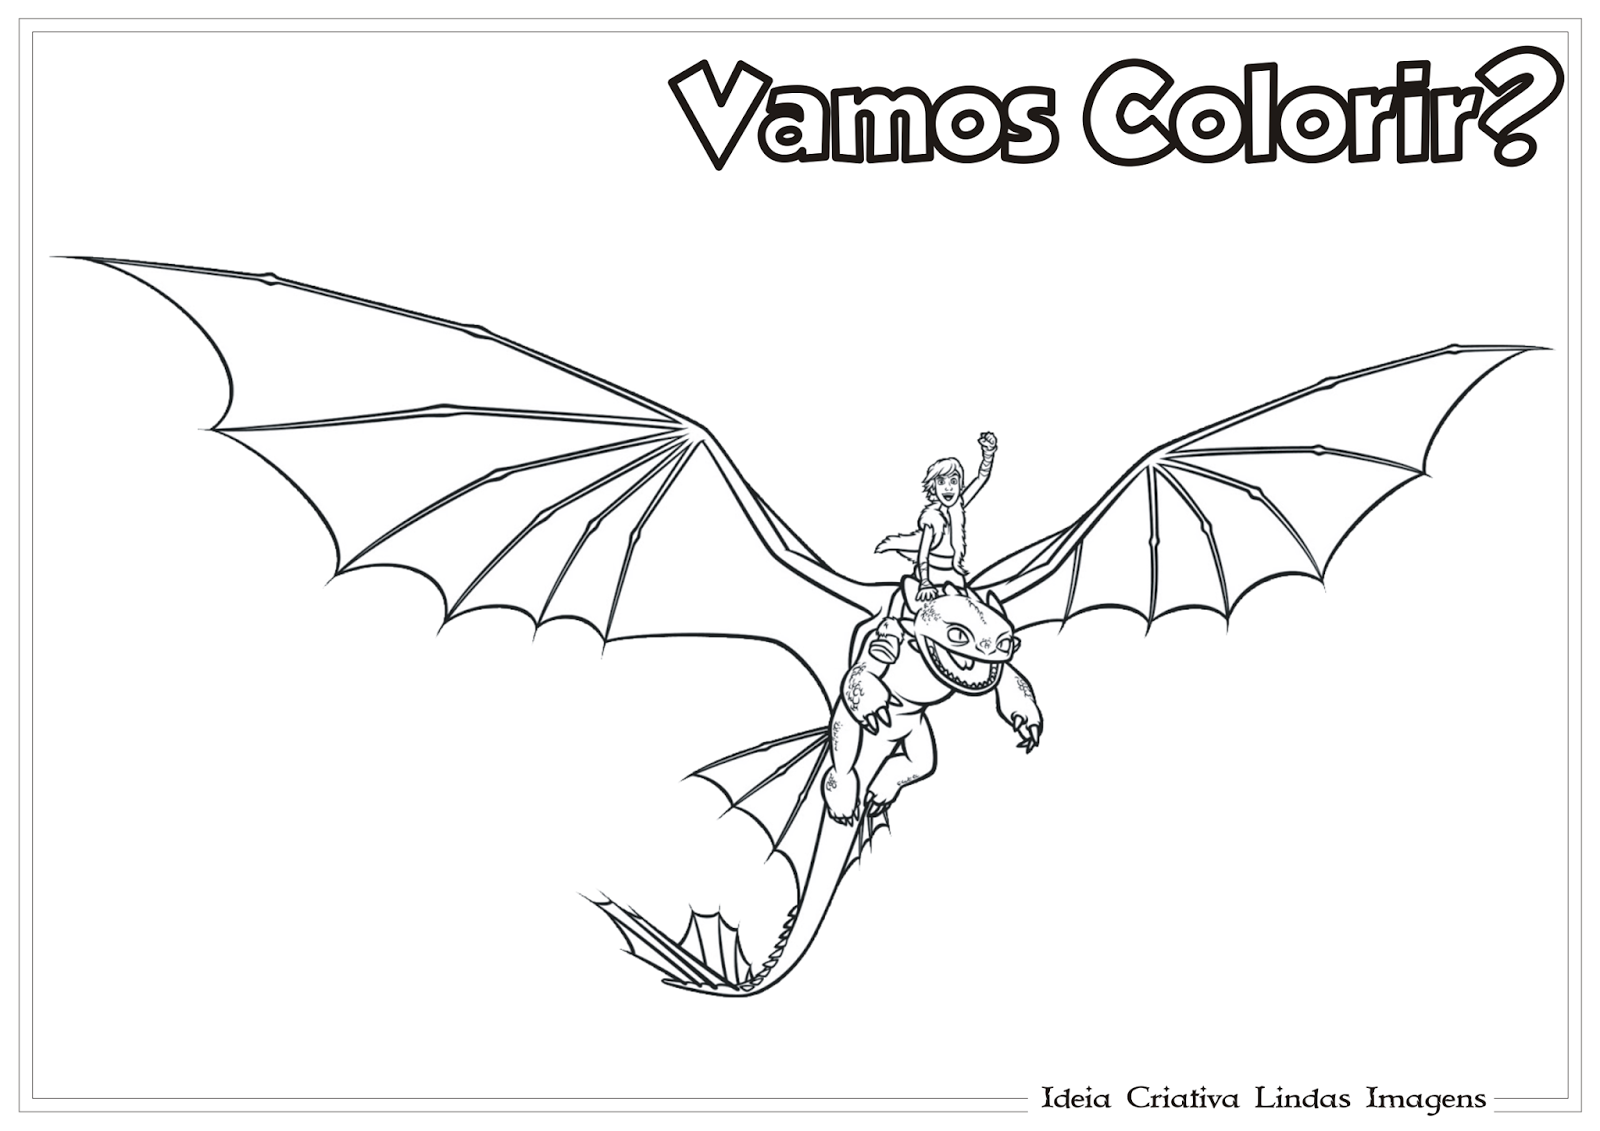 Desenhos de frutas do dragão para colorir - Páginas para colorir